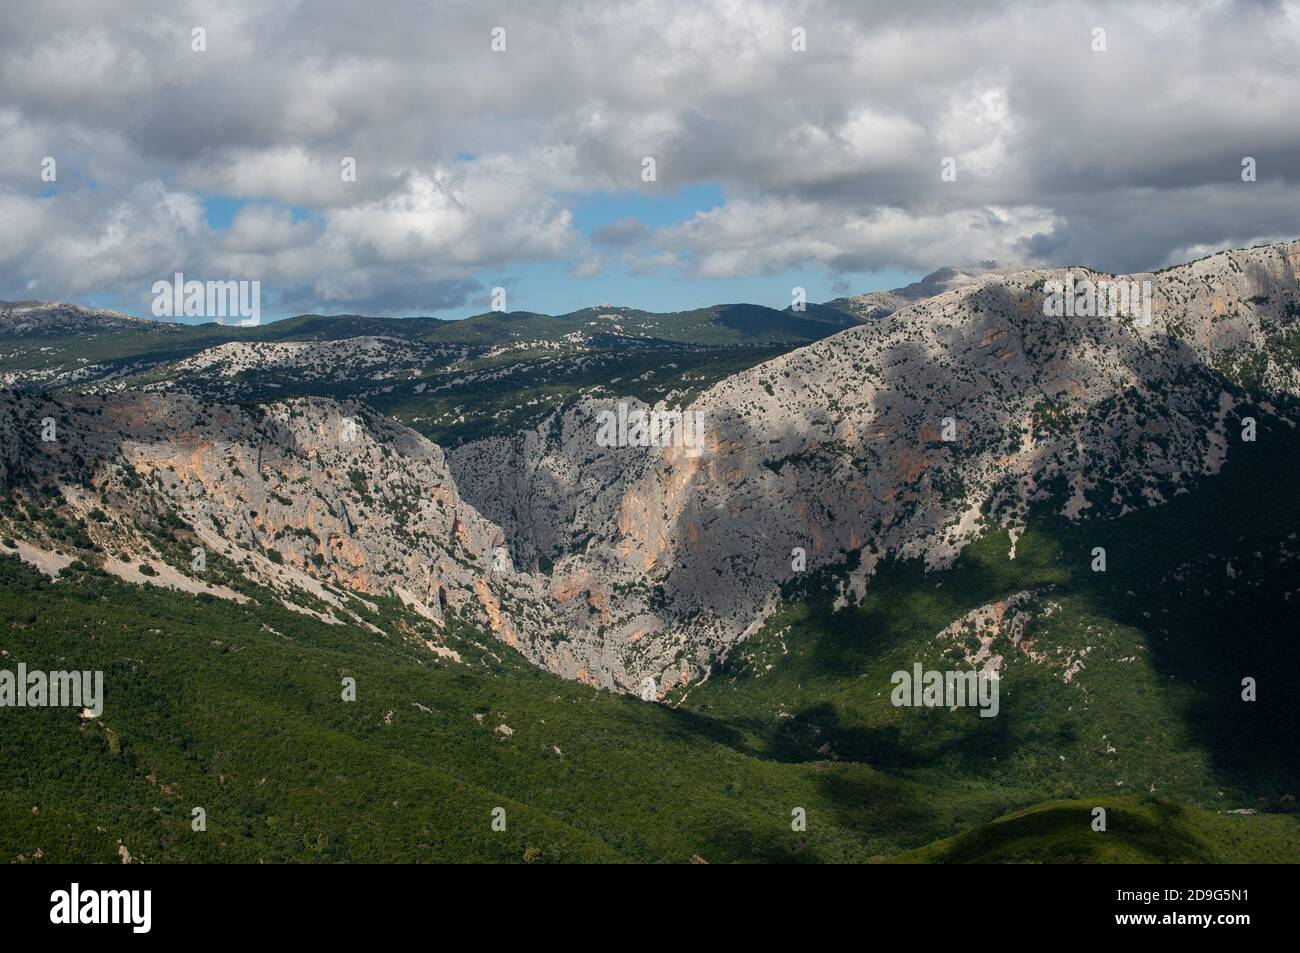 Gola di Gorropu. Berühmte und beeindruckende Schlucht in den Bergen von Sardegna, Italien. Wandernationalpark. Panoramabild. Stockfoto